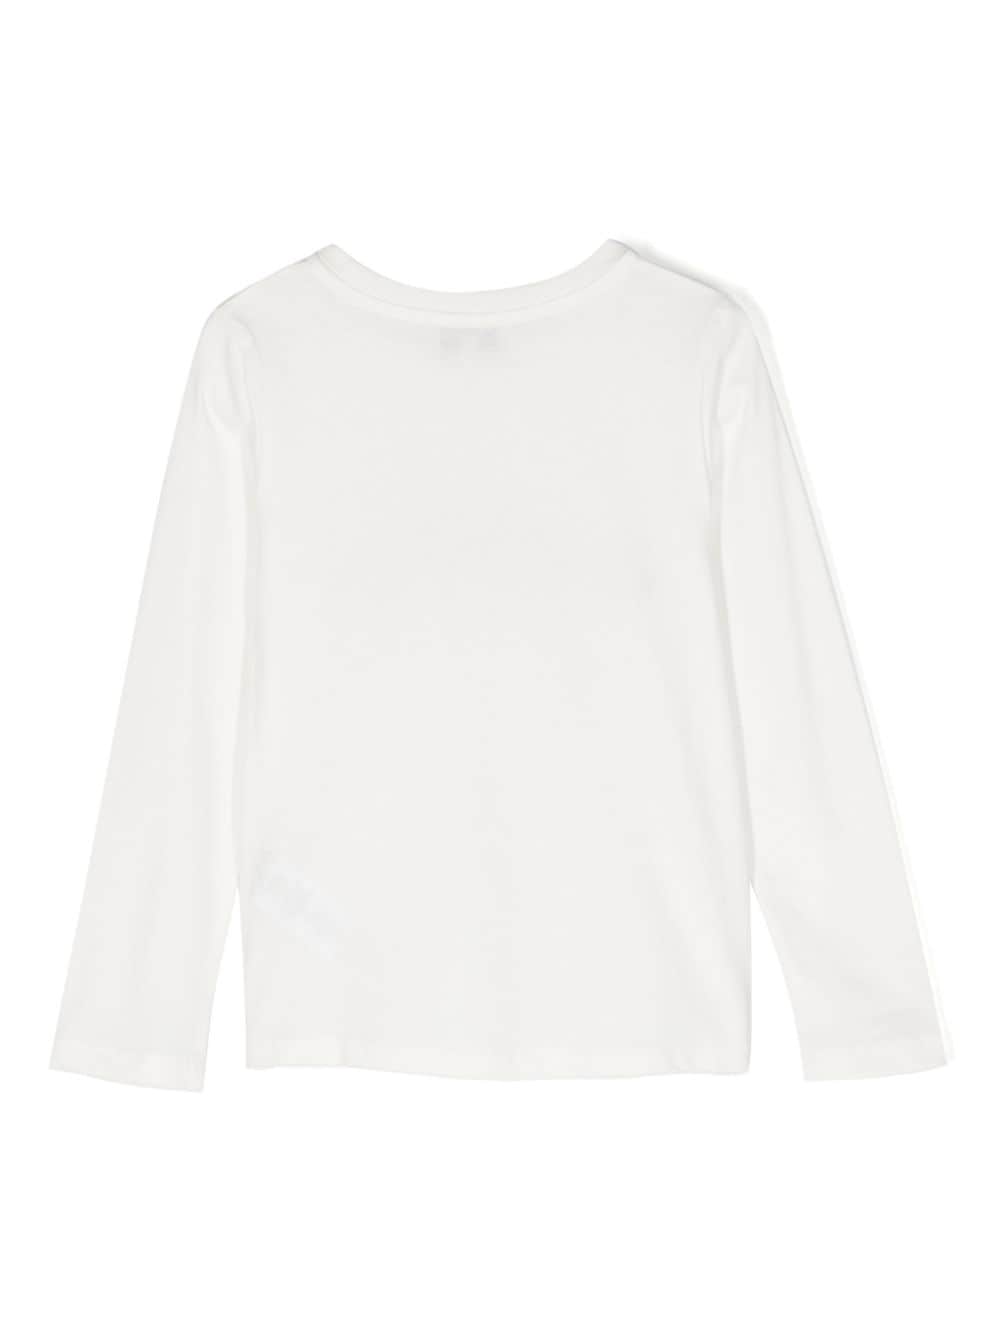 T-shirt nuage blanc fille avec imprimé